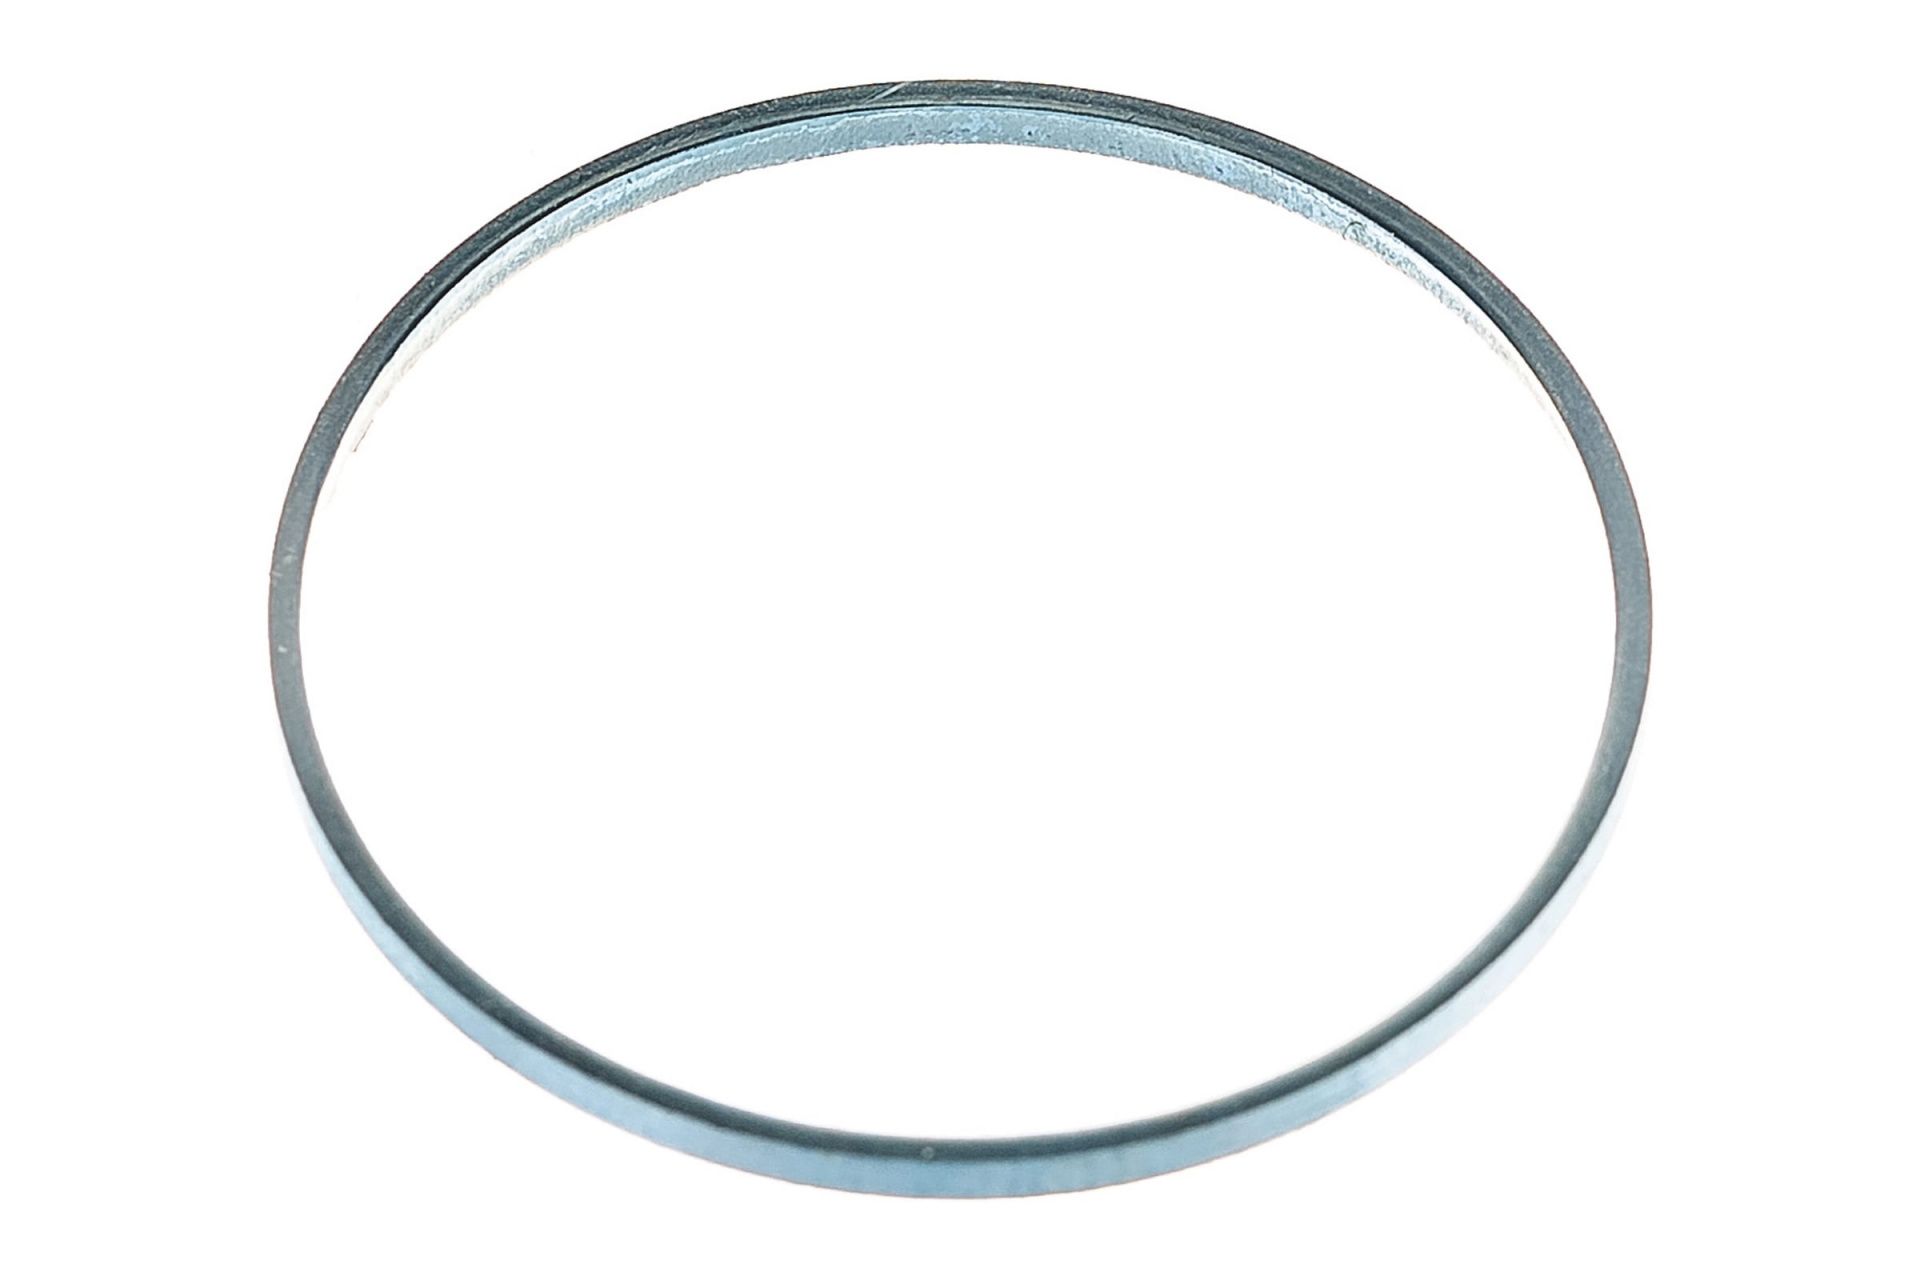 Кольцо переходное для дисков, 2 шт,толщина 2,0 и 1,6 мм ПРАКТИКА 32/30 мм,